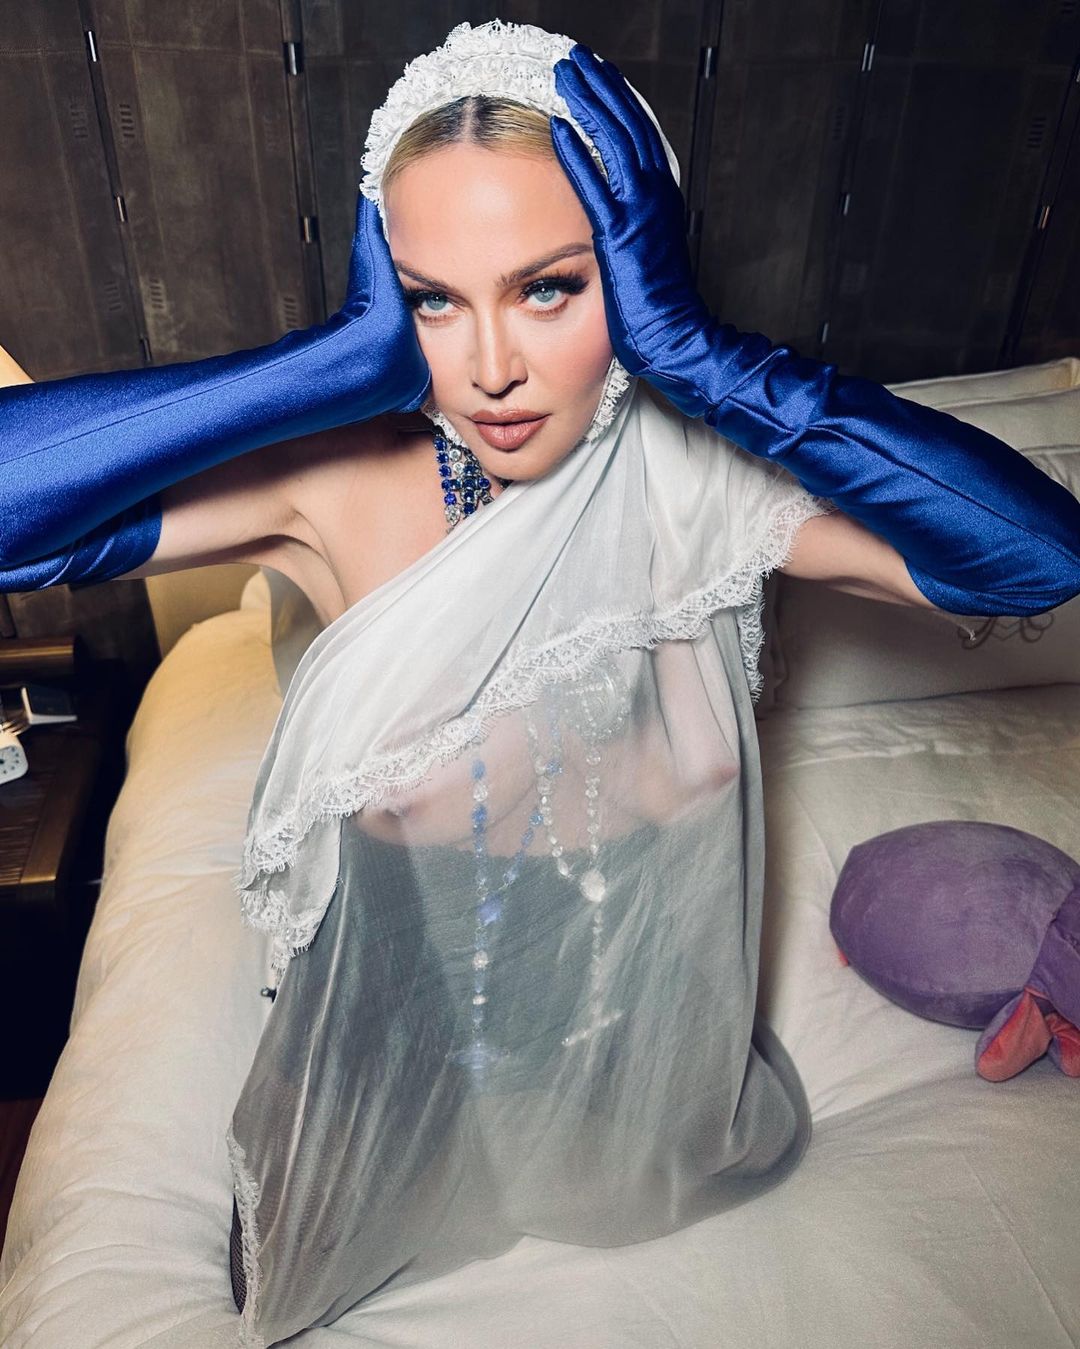 Секс продолжается: в рамках мирового тура Мадонна устроила постельную фотосессию в образе невесты. Топ откровенных фото из книги Мадонны Sex